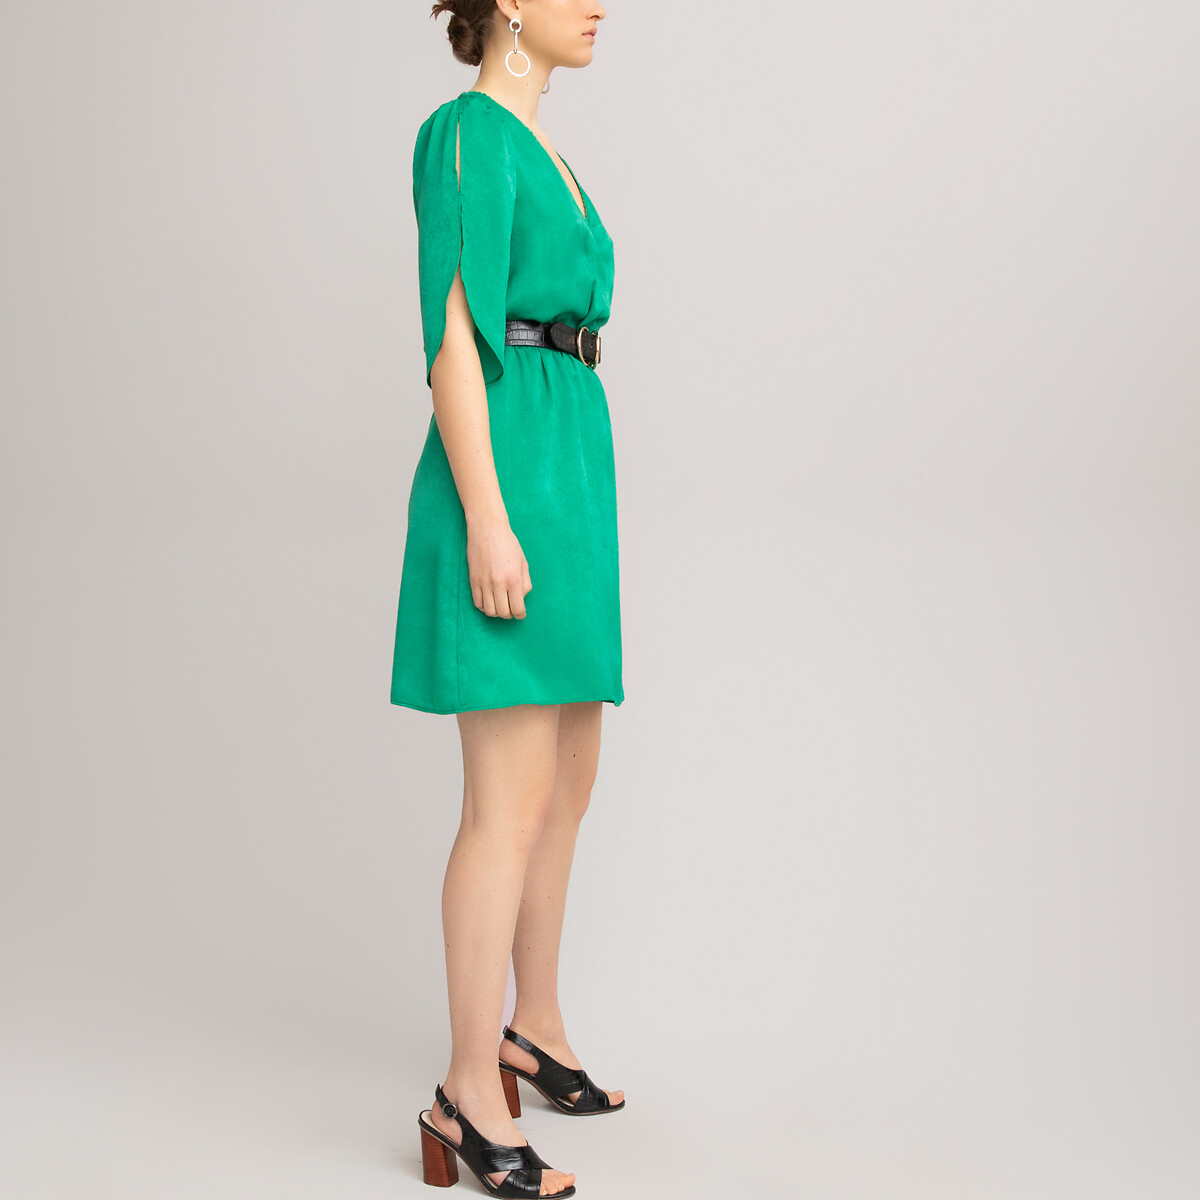 Платье LaRedoute Короткое с запахом короткие рукава 38 (FR) - 44 (RUS) зеленый, размер 38 (FR) - 44 (RUS) Короткое с запахом короткие рукава 38 (FR) - 44 (RUS) зеленый - фото 2